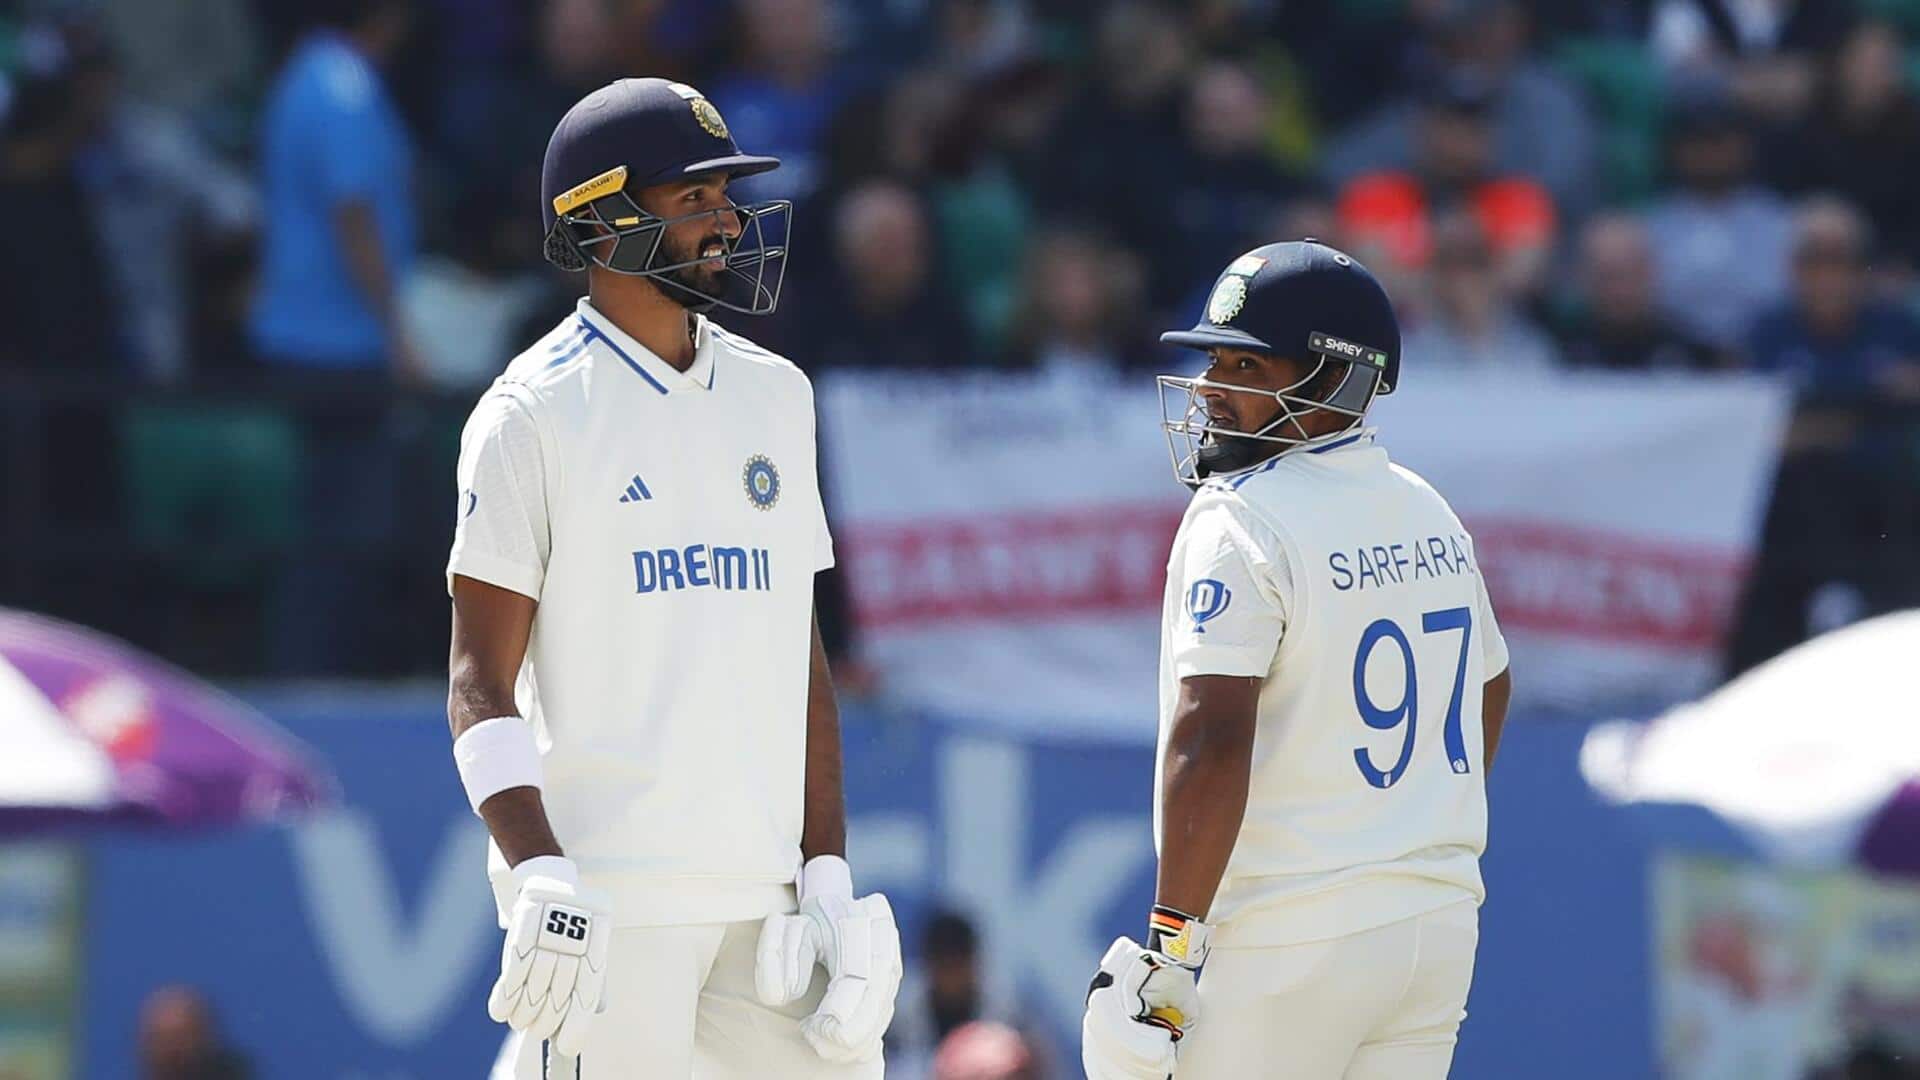 धर्मशाला टेस्ट: इंग्लैंड के खिलाफ भारत की बढ़त 250 रन के पार, ऐसा रहा दूसरा दिन